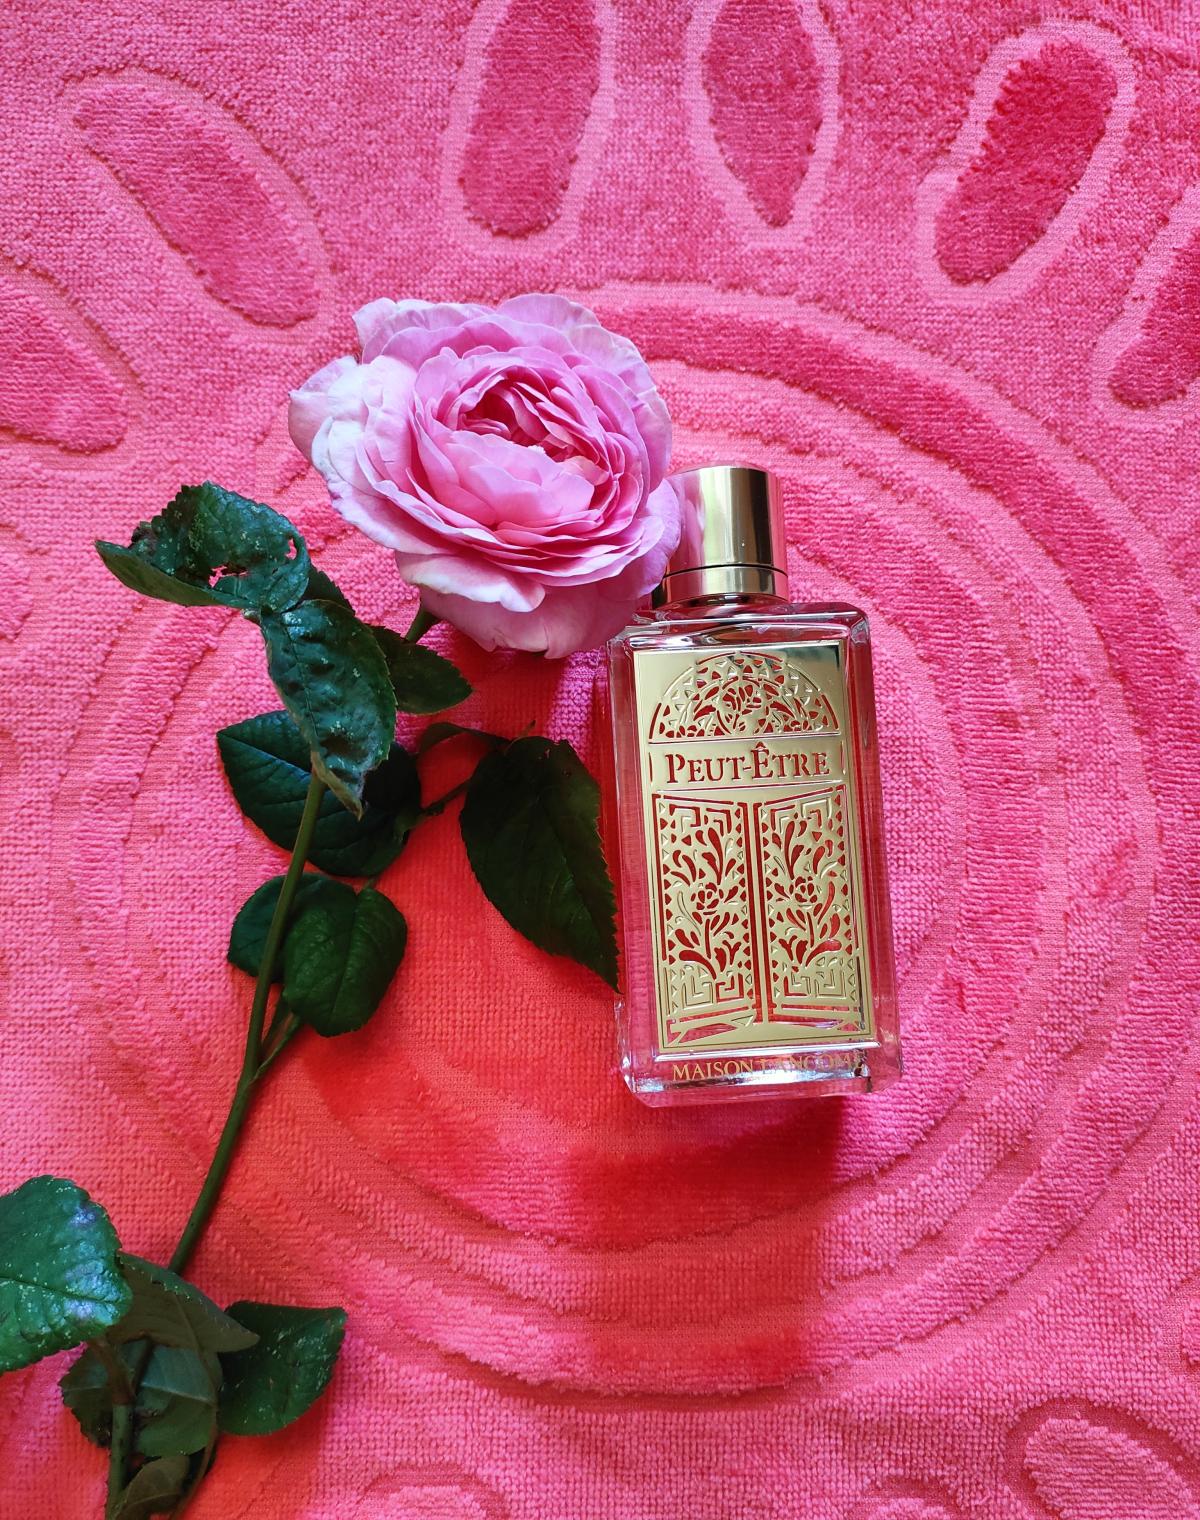 Peut-Être Lancôme perfume - a fragrance for women and men 2020